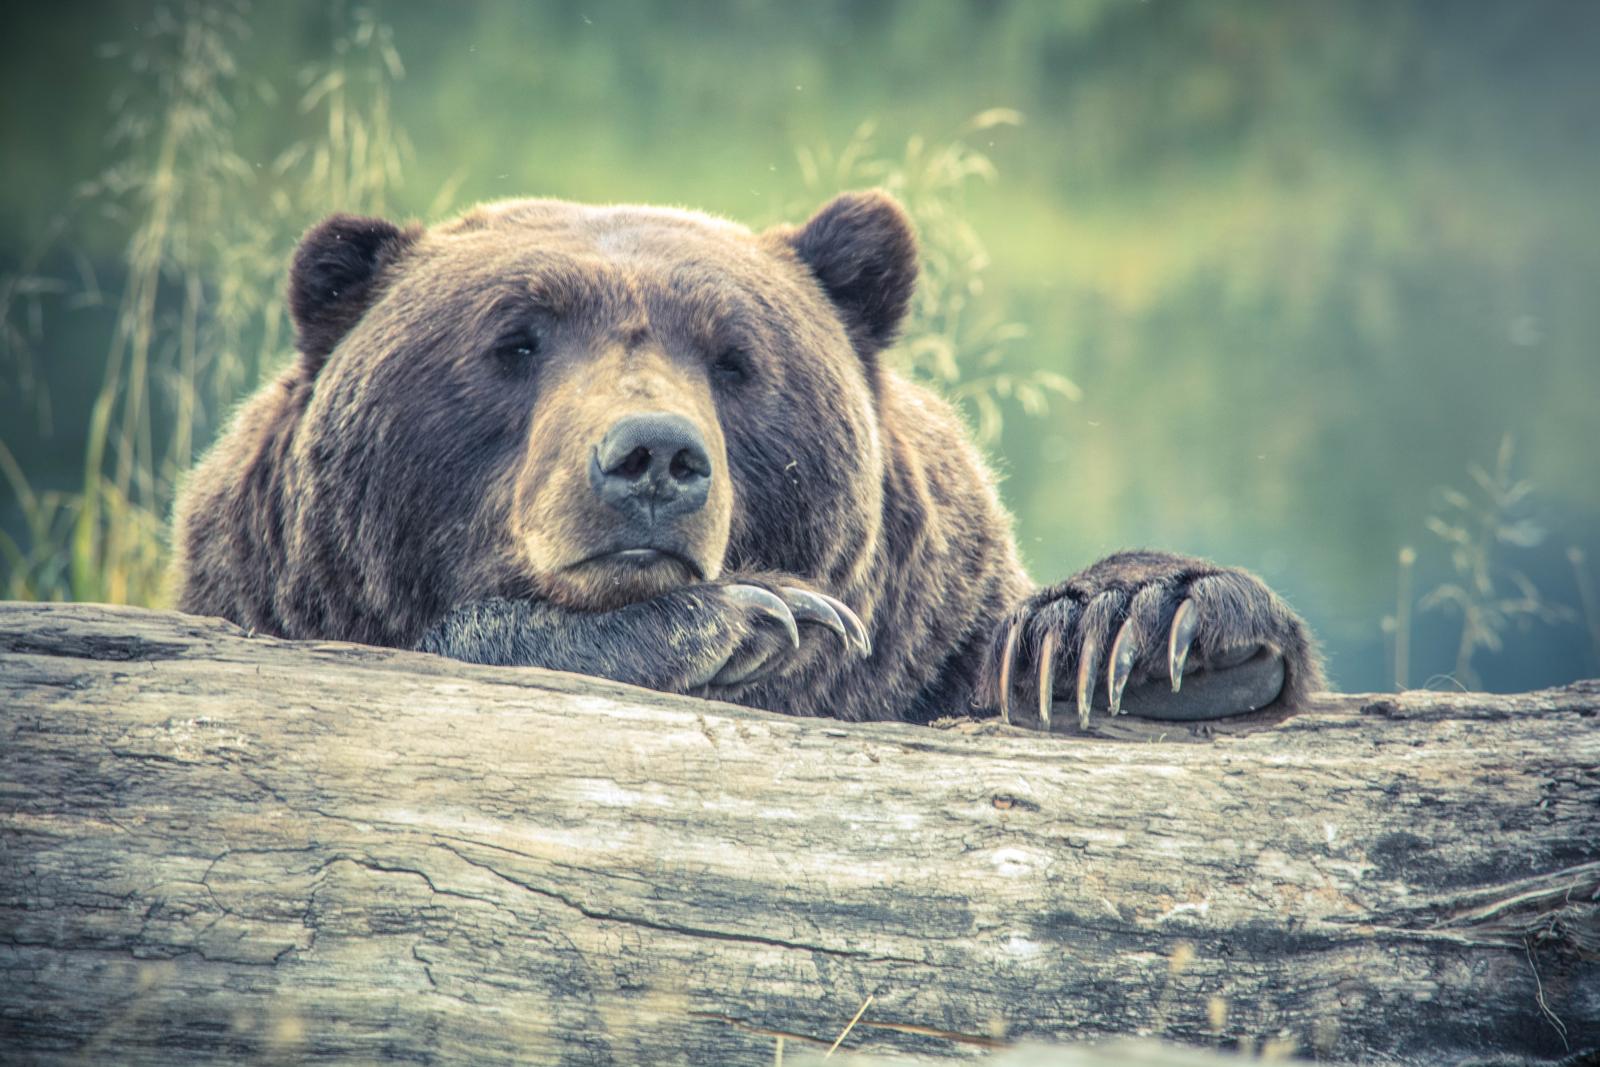 Brown bear on tree long. Photo credit: Pexels